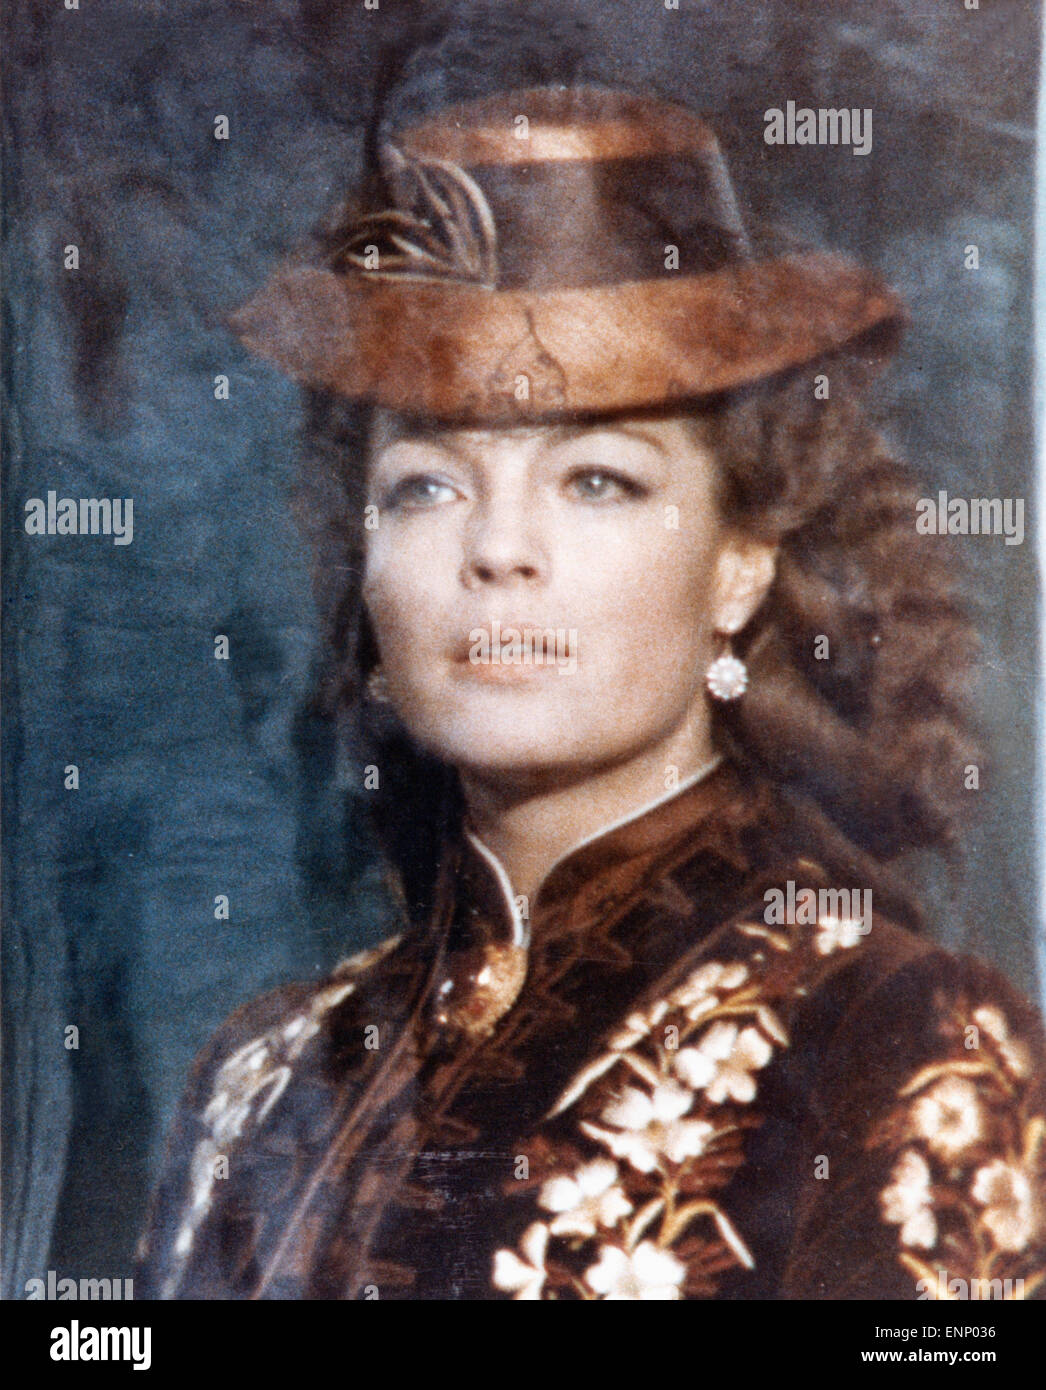 Ludwig, Frankreich/Italien/Deutschland 1972, aka: Ludwig II., Regie: Luchino Visconti, Darsteller: Romy Schneider (hinter Glassc Stock Photo